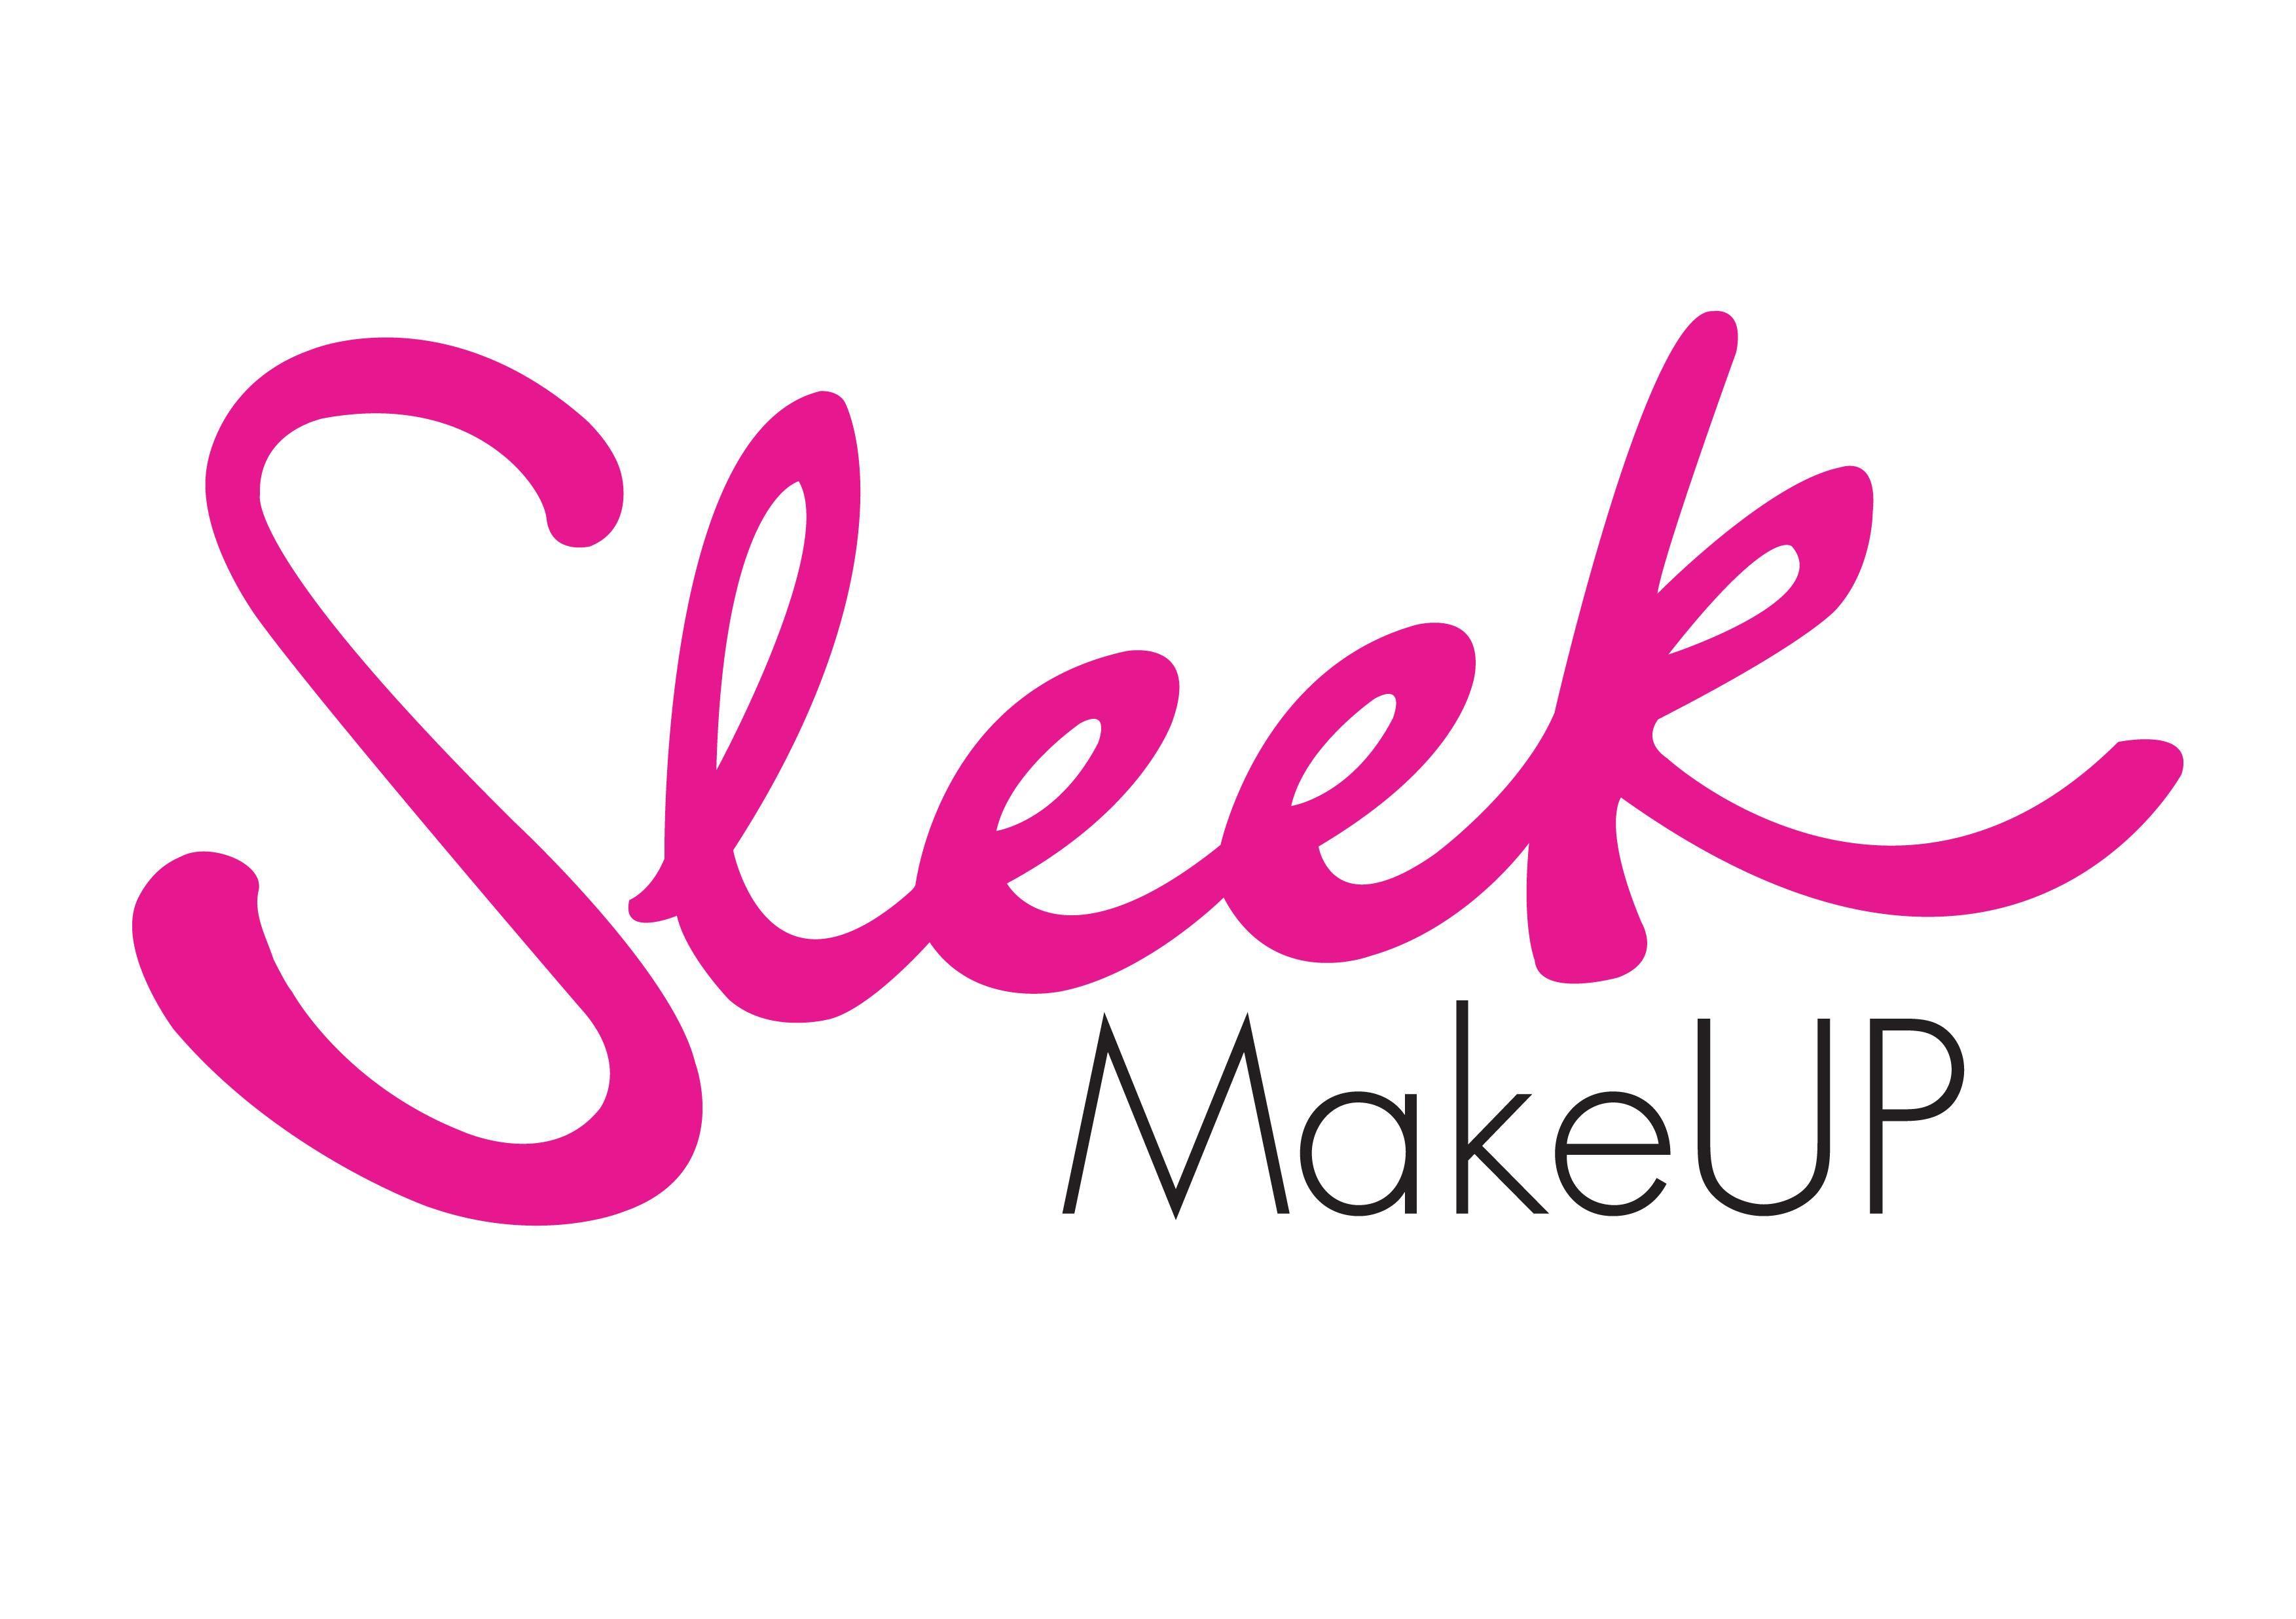 Leading Makeup Company Logo - makeup brands logo - Google Search | Make-Up Artist | Makeup, Logos ...